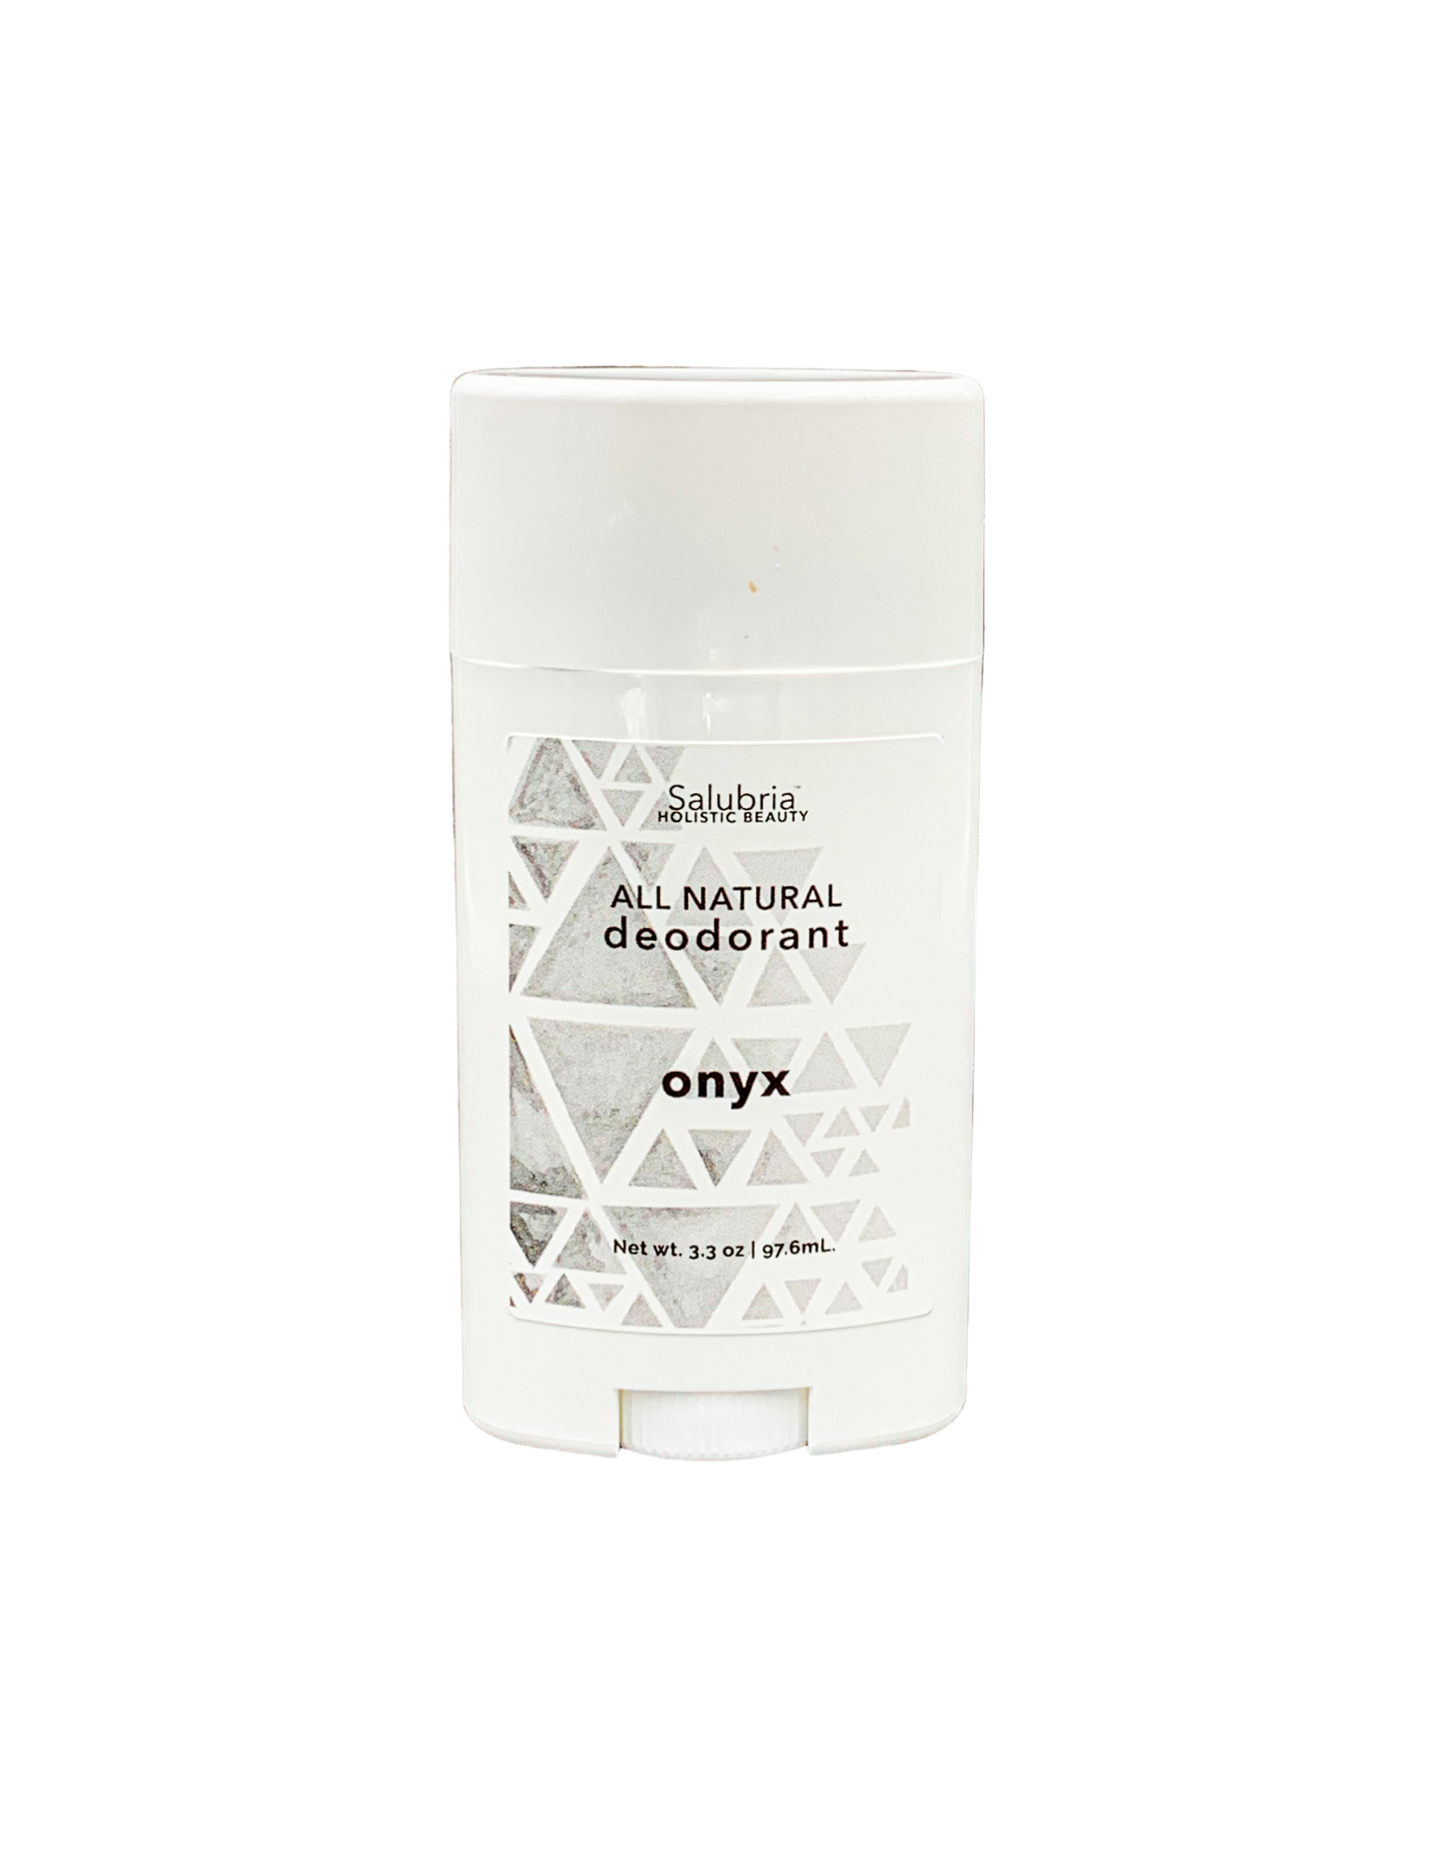 Onyx Deodorant